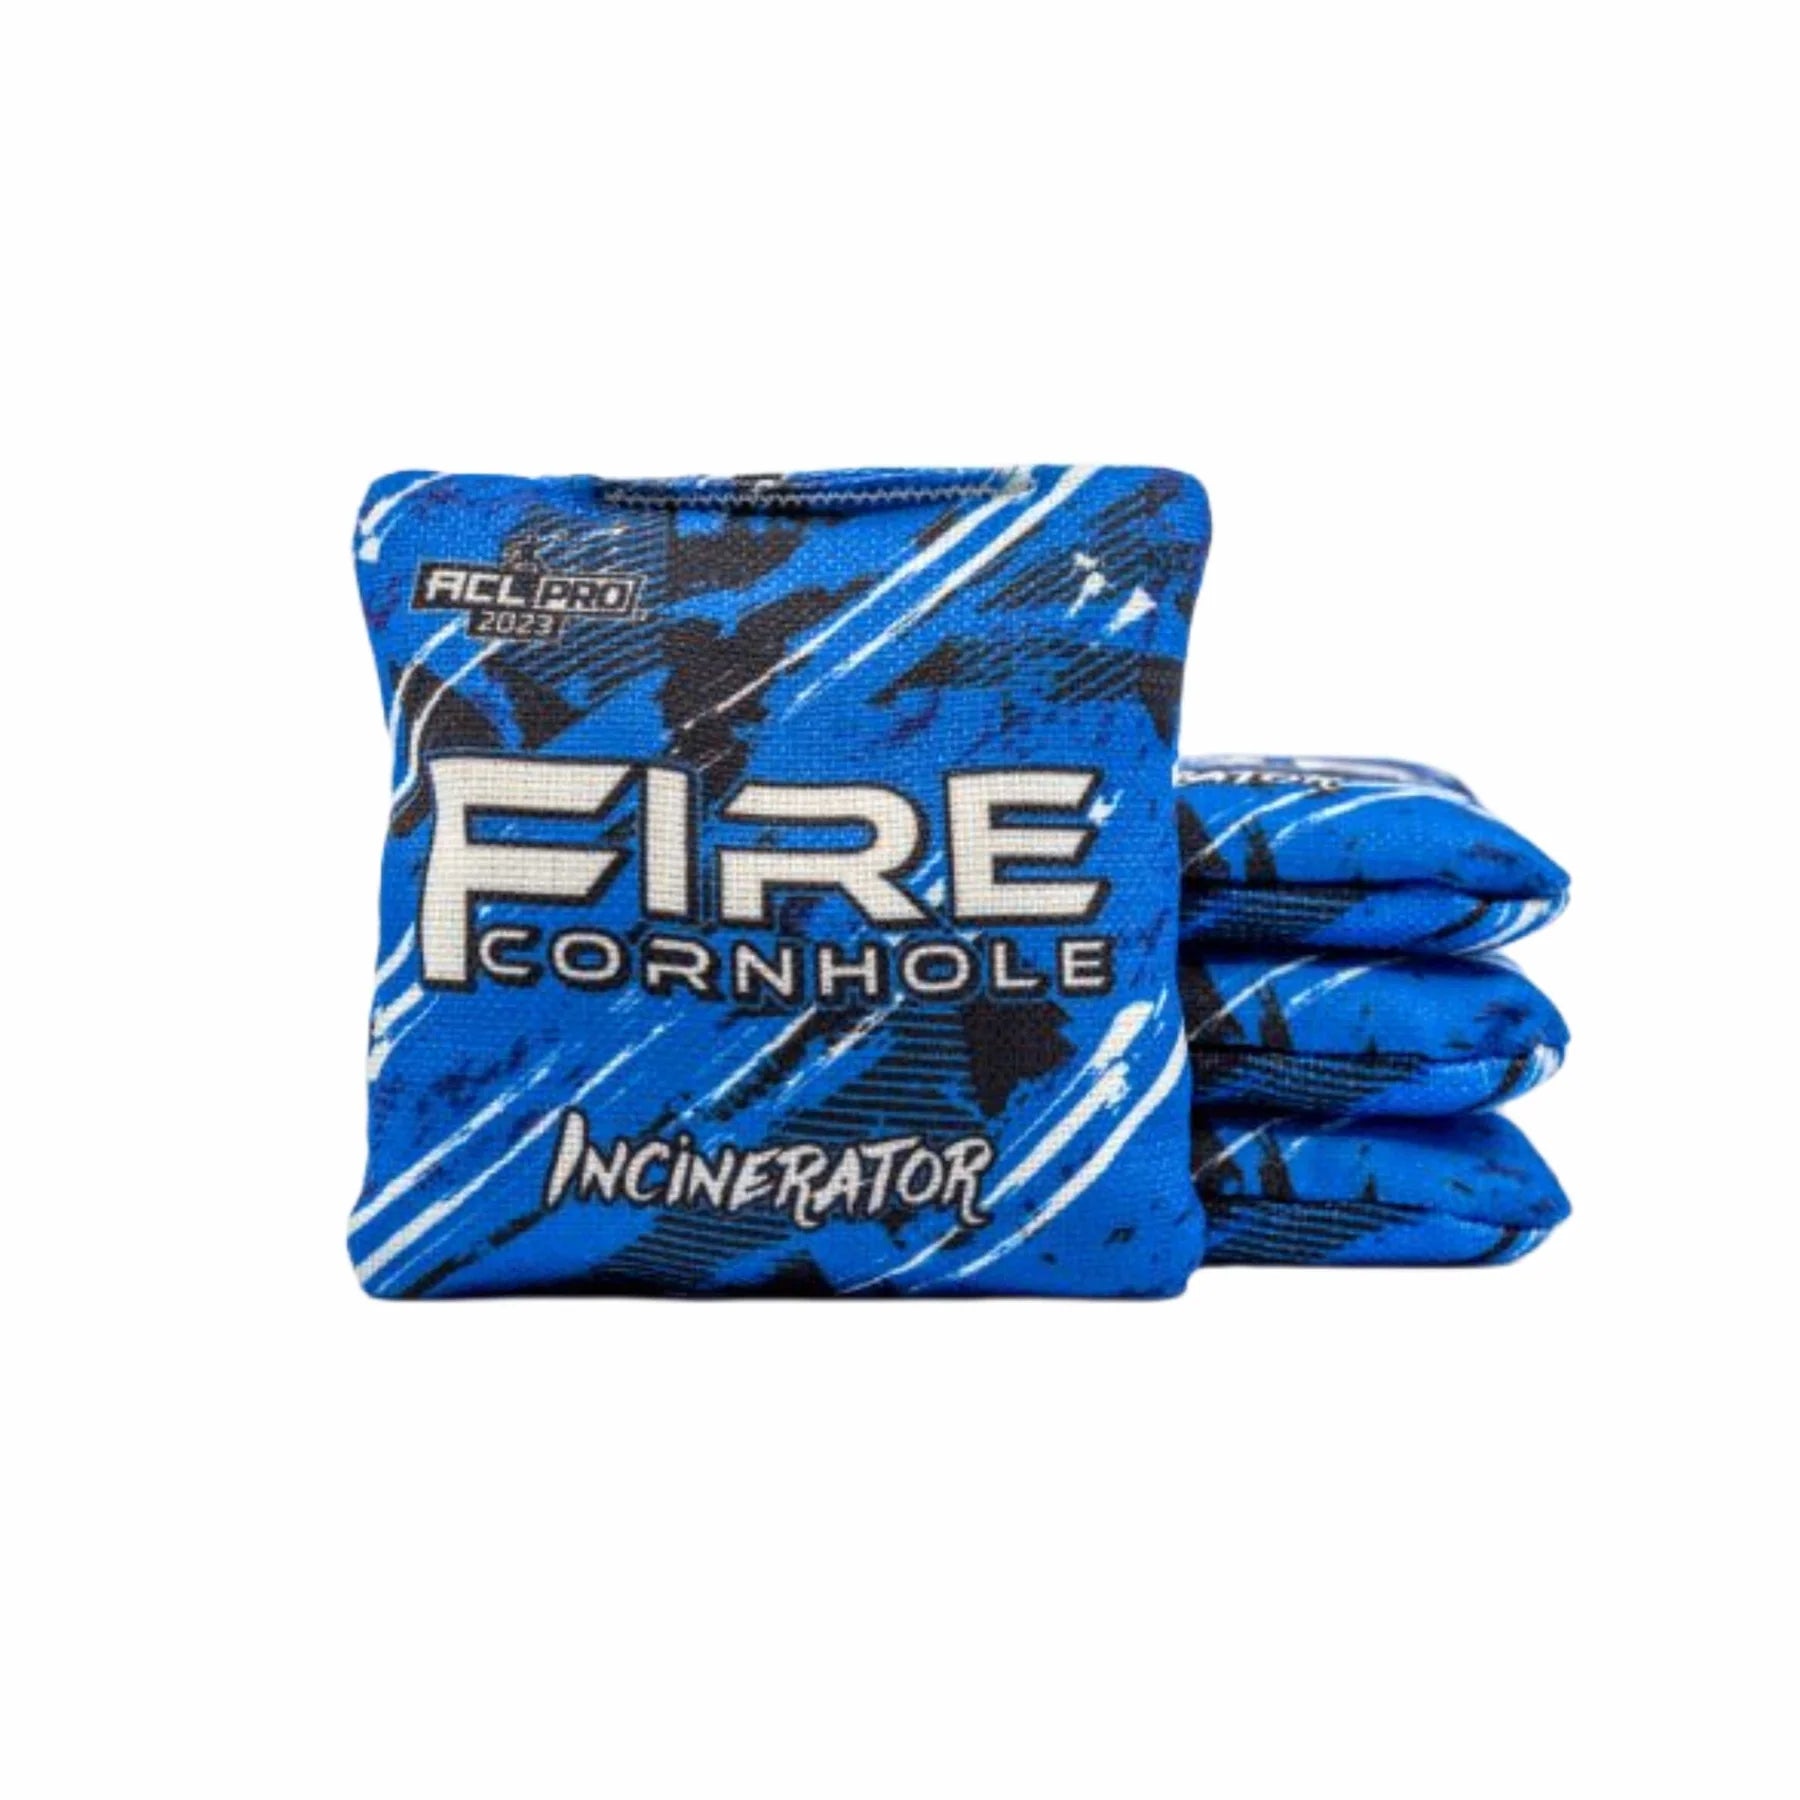 Fire Incinerator 2023 - 1x4 Cornhole bags